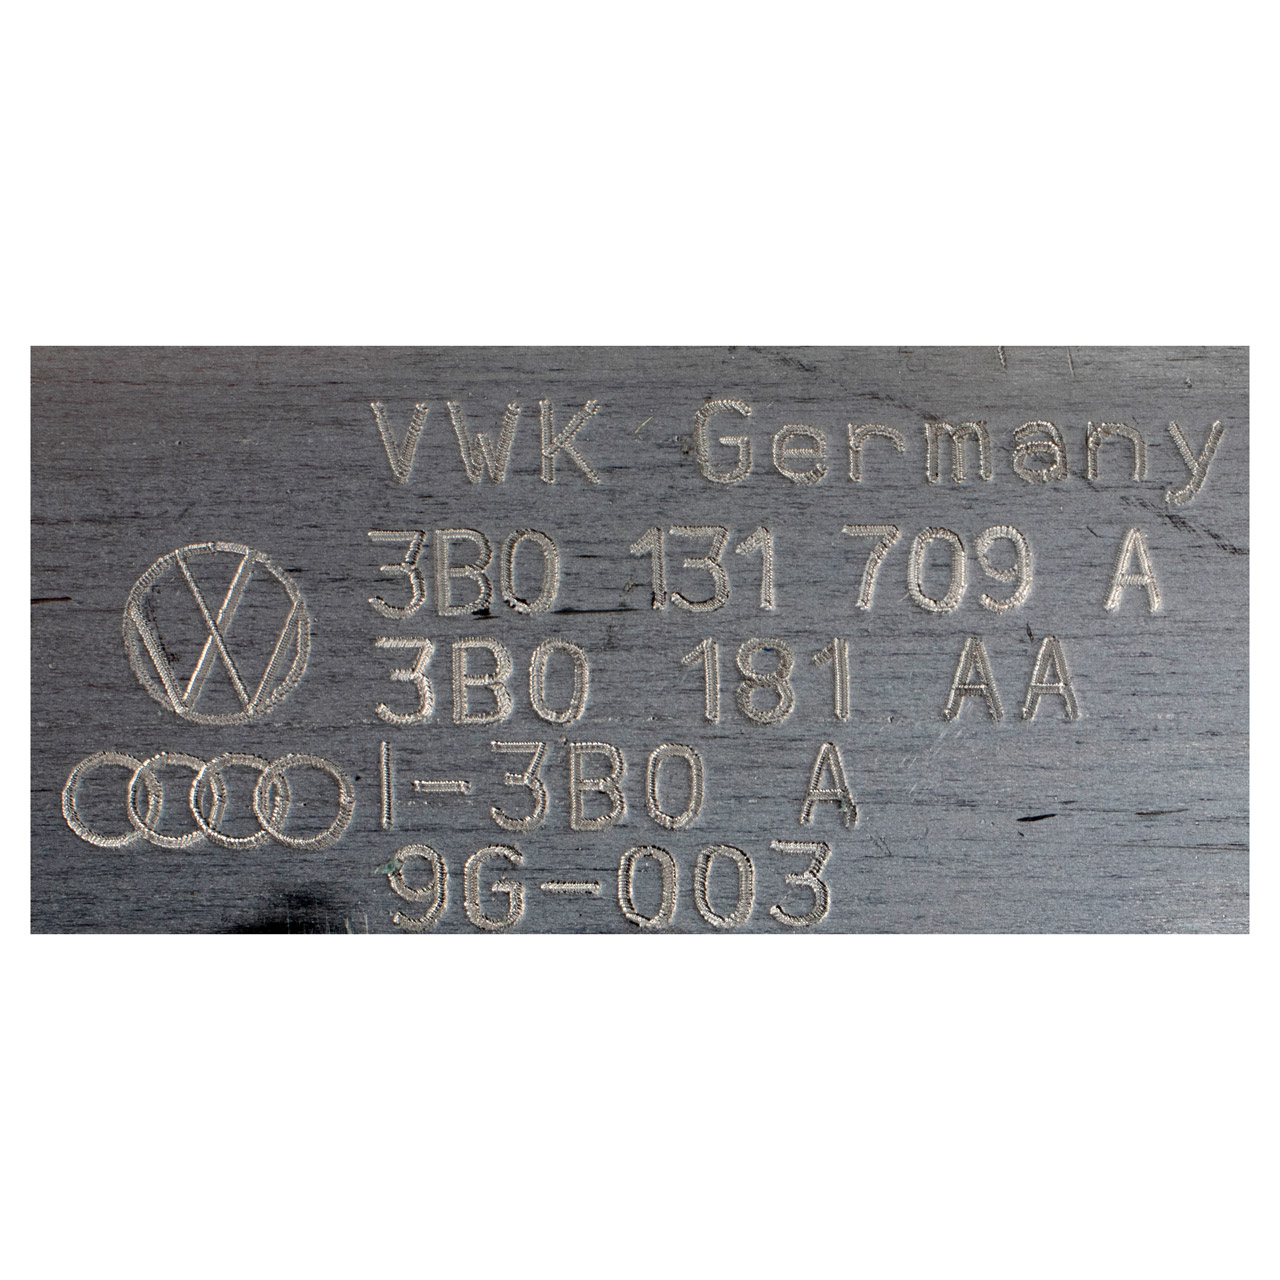 ORIGINAL VW Skoda DPF Rußpartikelfilter Superb 1 3UA Passat B5.5 2.0 TDI 3B0131709A